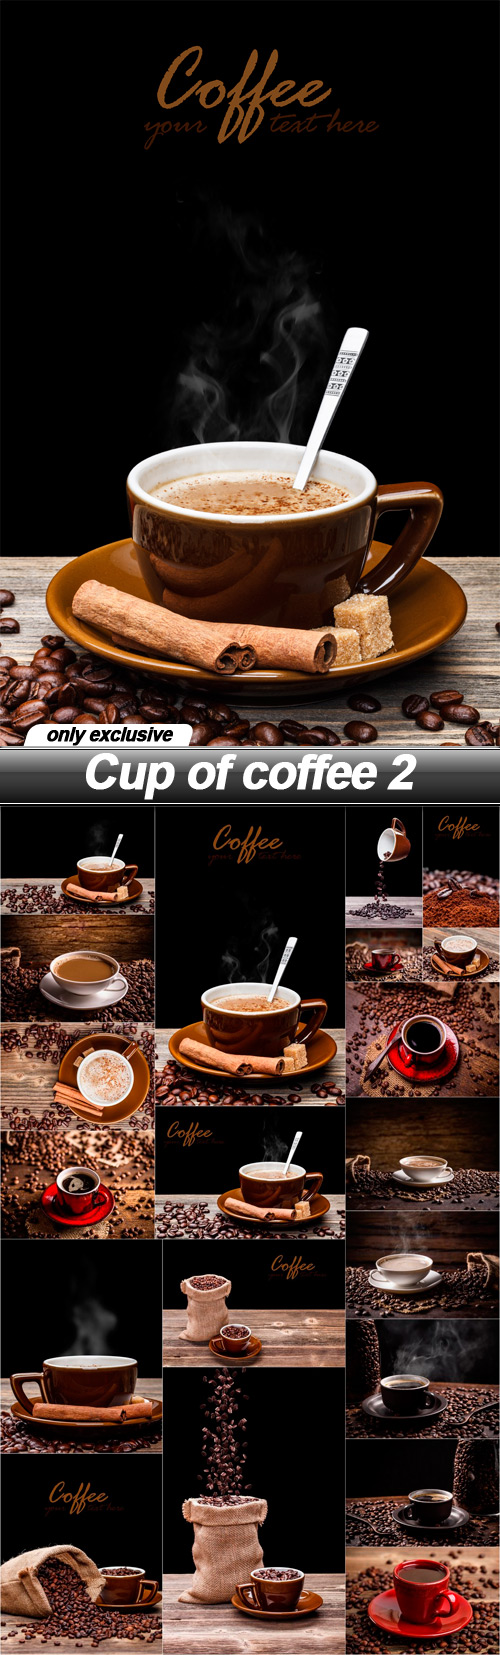 Cup of coffee 2 - 20 UHQ JPEG